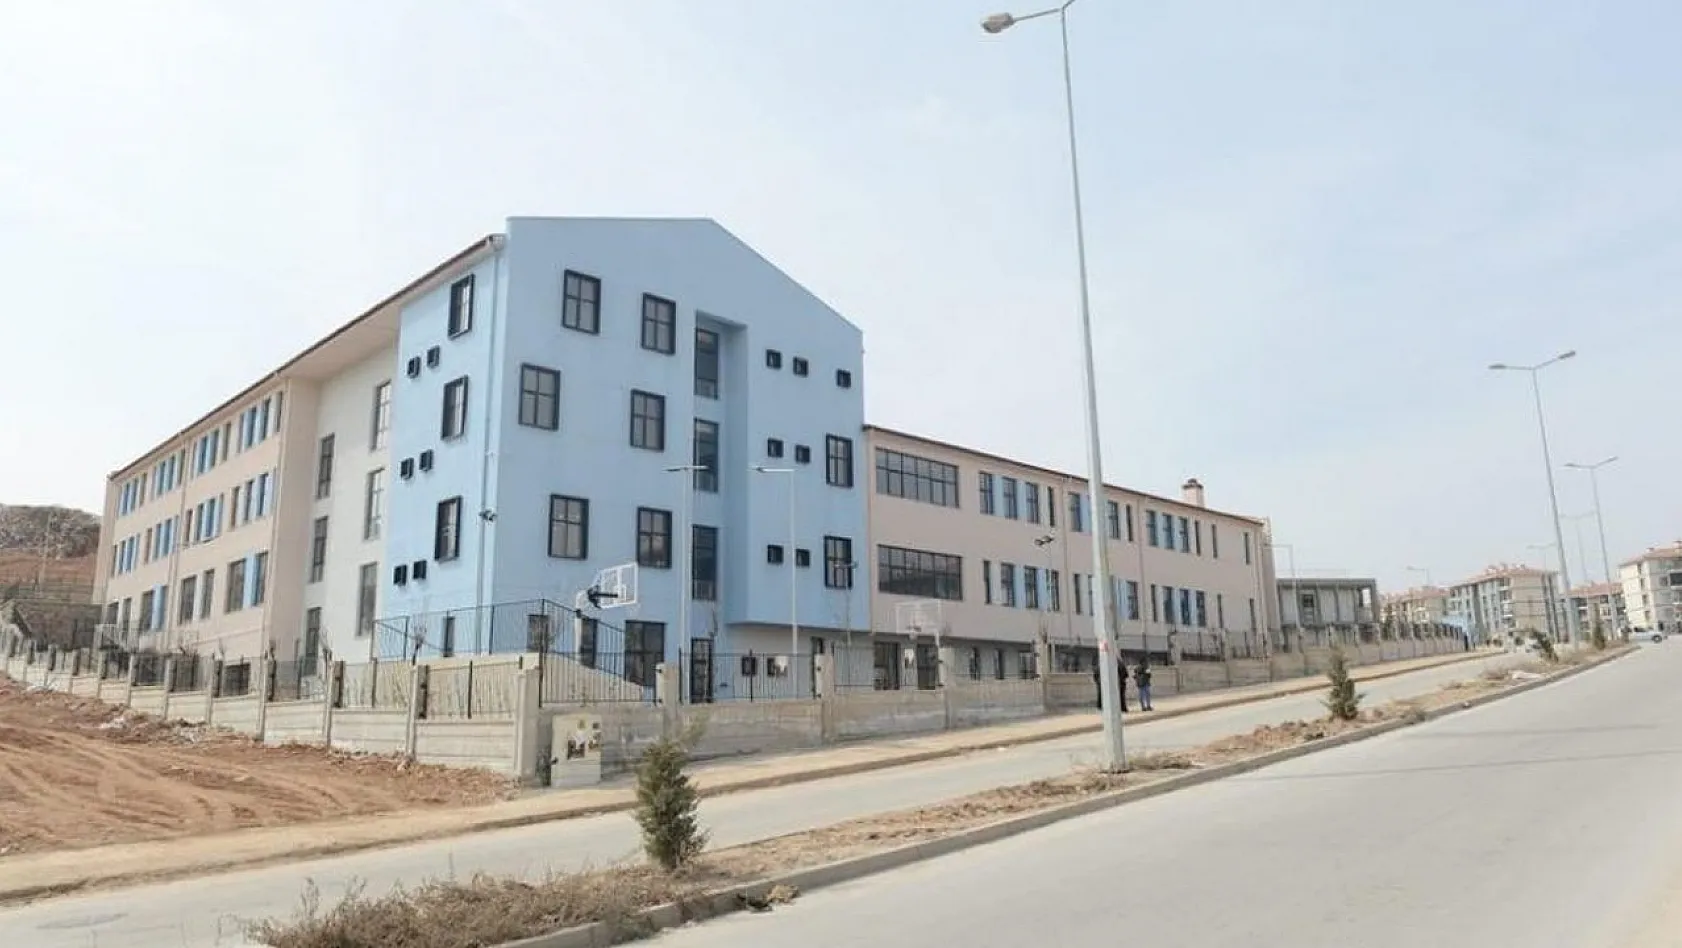 Şehit Korgeneral Osman Erbaş'ın İsmi Yeni Açılan Okulda Yaşatılacak